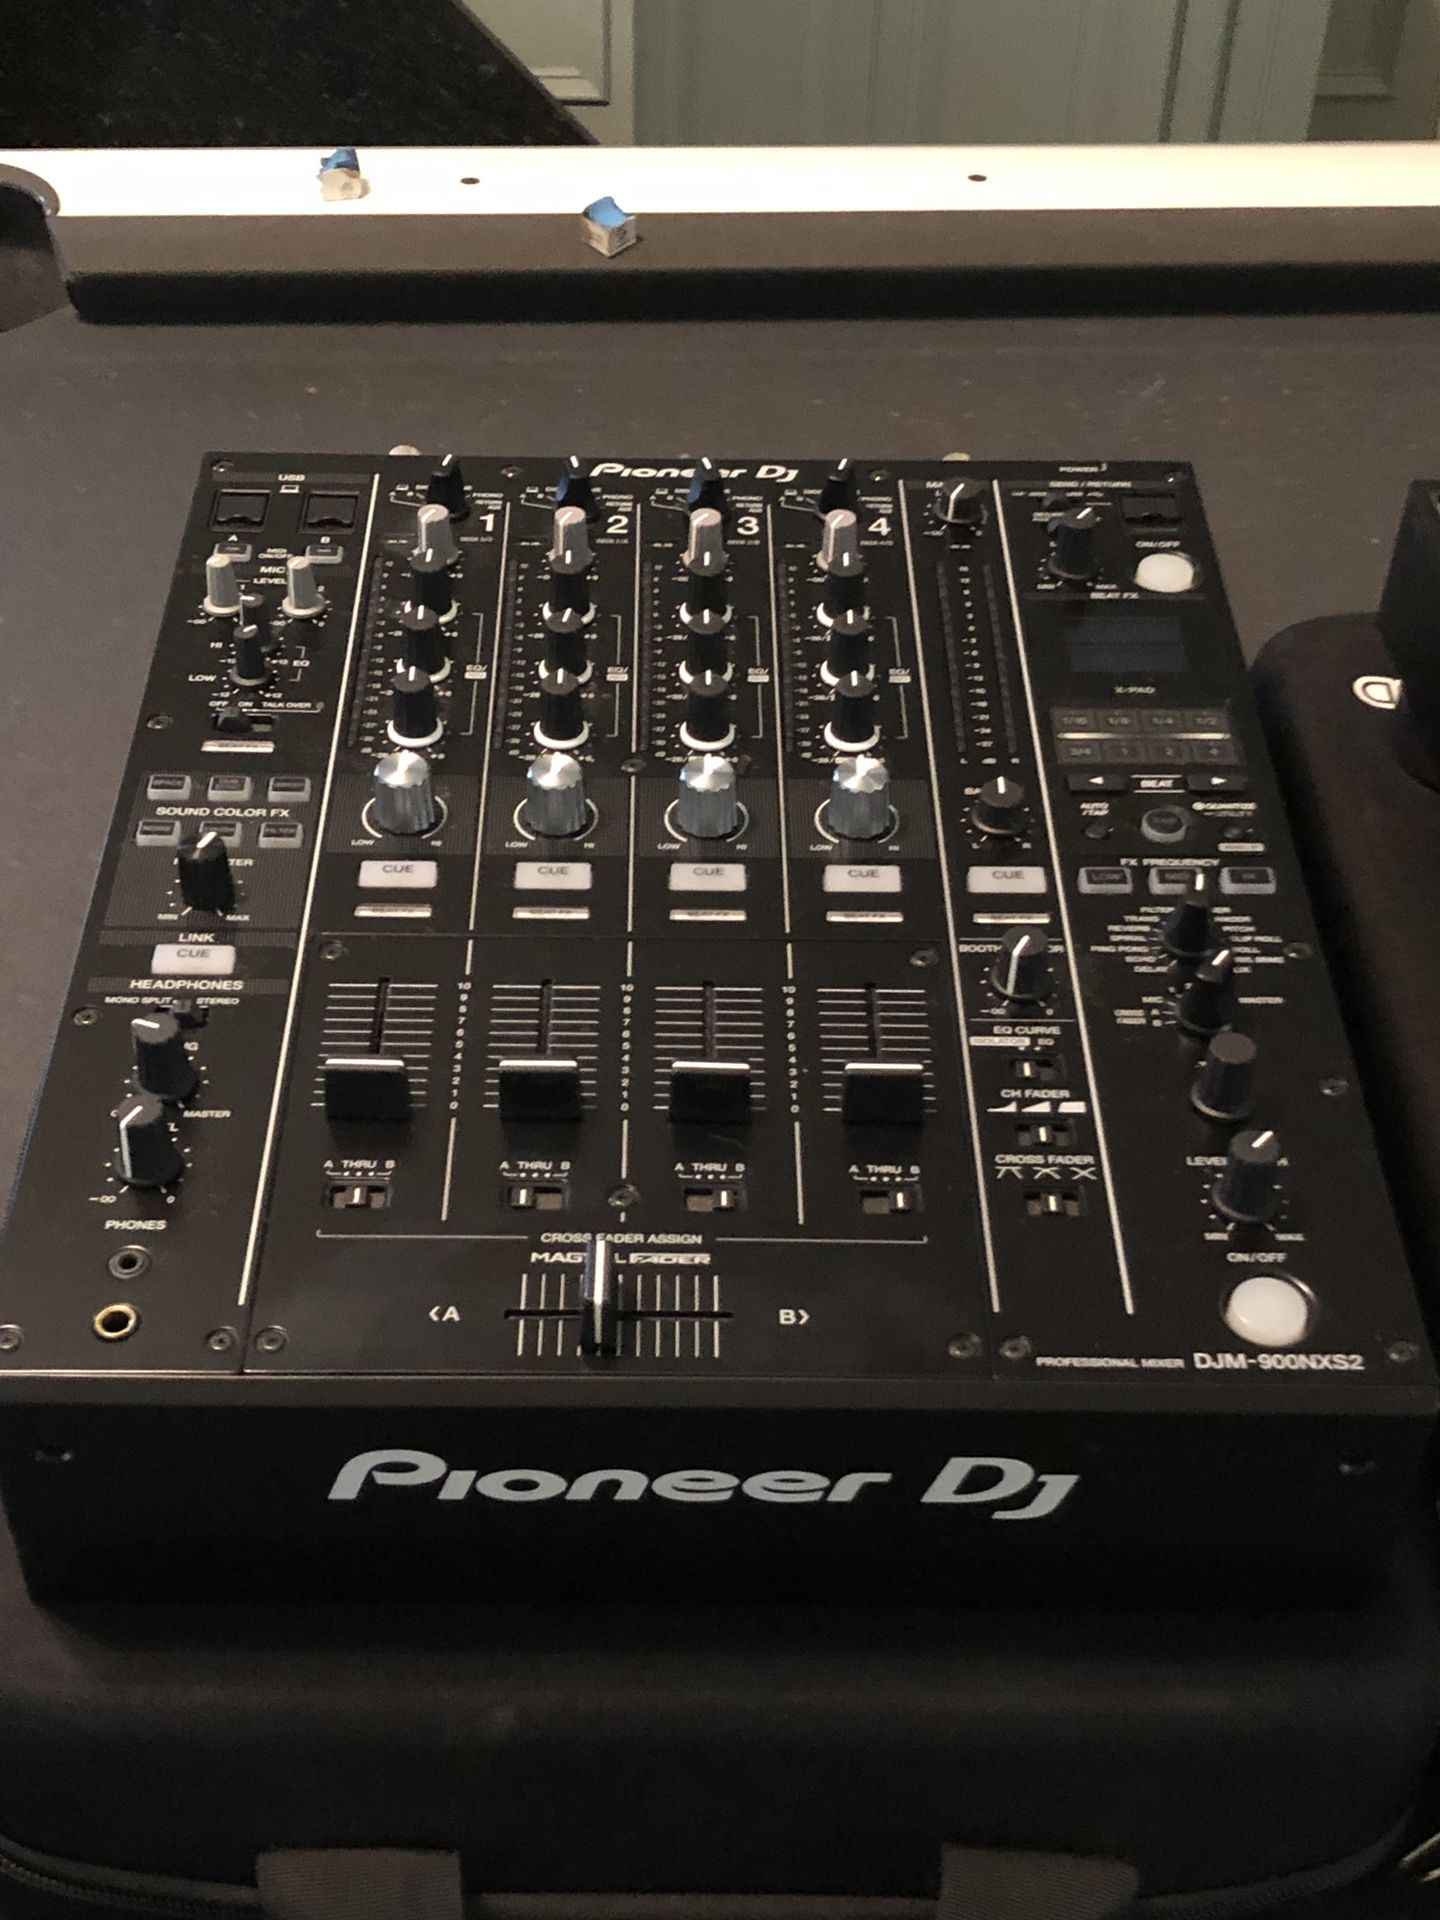 PIONEER DJ MIXER. DJM-900NXS2 Nexus 2